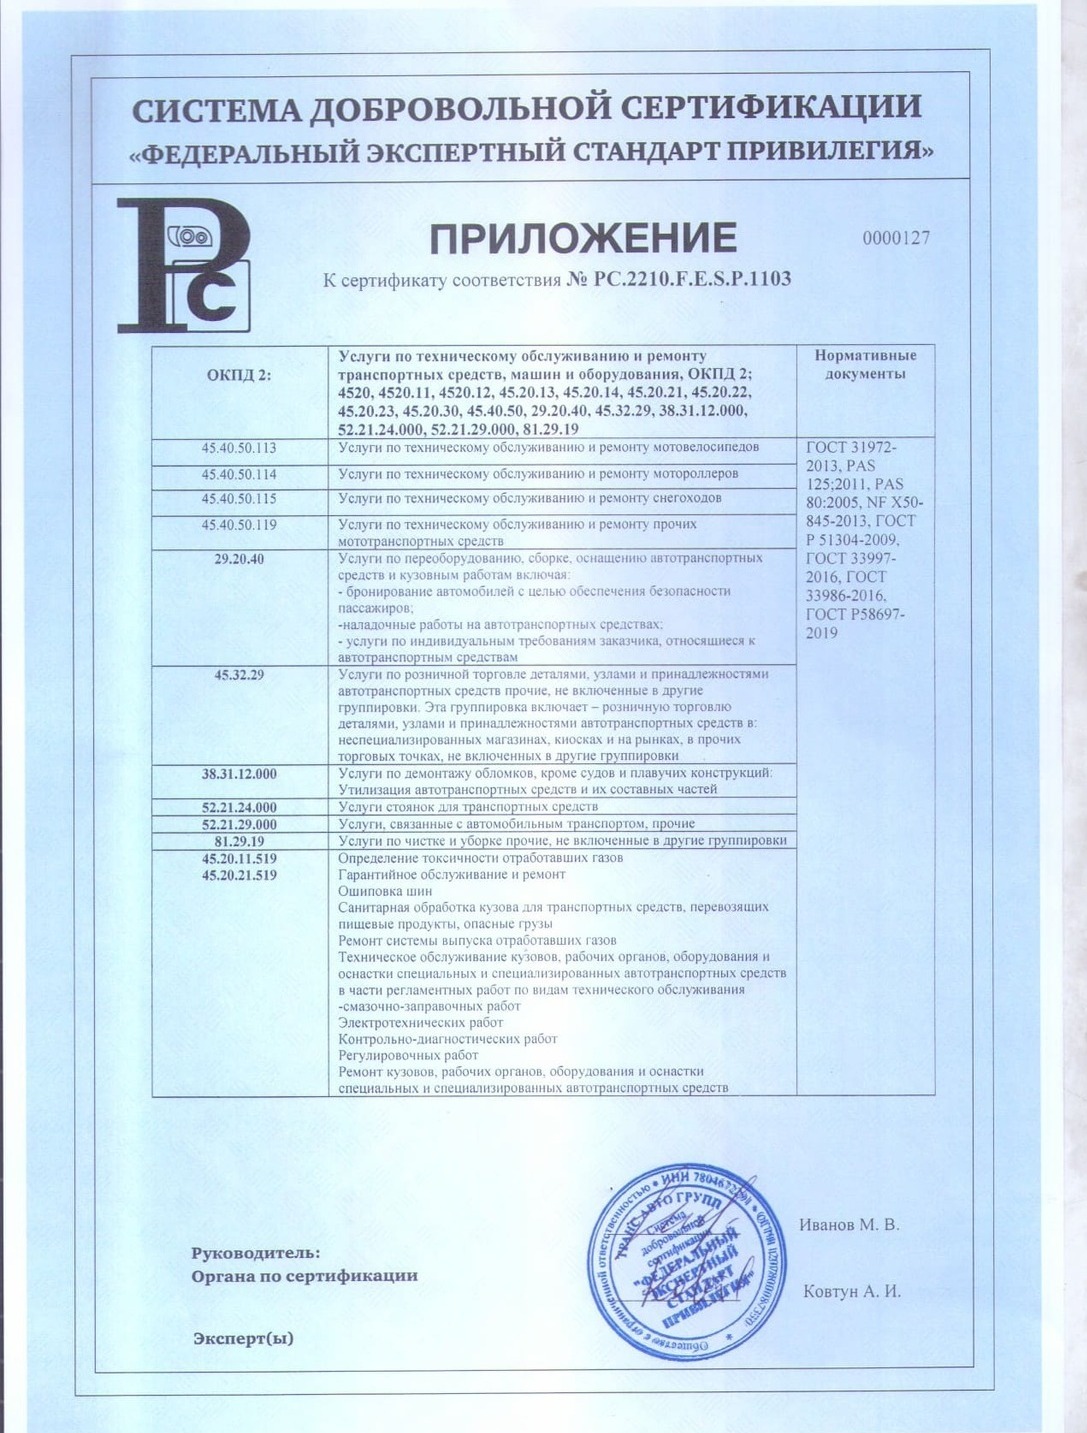 Приложение № 4 к сертификату на ремонт рефов